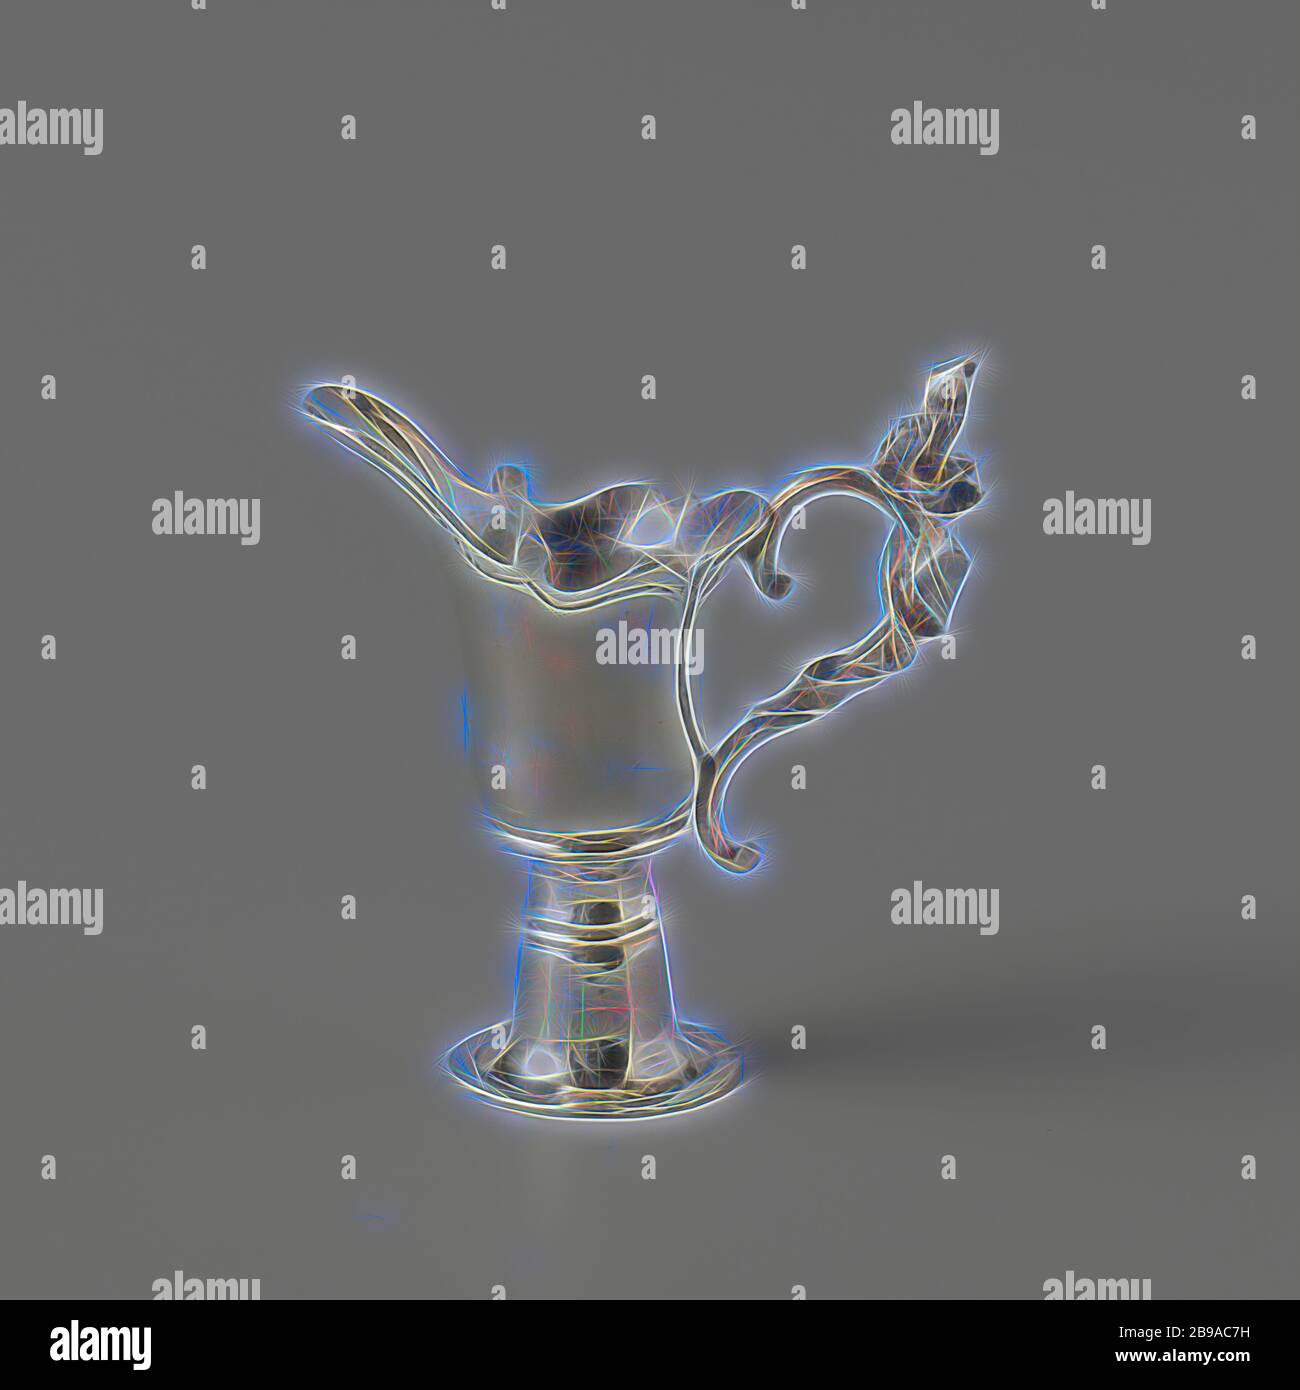 Lampenkrug, Lampenkrug auf hohem, glockenförmigen Sockel. Der Griff des Kännchens ist mit einem Blumenzweig umwickelt. Die Kanne hat einen breiten Auslauf. Die Kanne ist nicht markiert. Die Kanne steht auf einem Tablett, auf dem Tablett befinden sich auch sechs Trinkgläser. Das Tablett ist auf einem Klapptisch, anonym, Niederlande, c. 1770, Silber (Metall), H 3.8 cm × B 3.5 cm, neu gestaltet von Gibon, Design von warmen fröhlich glühen von Helligkeit und Lichtstrahlen Ausstrahlung. Klassische Kunst neu erfunden mit einem modernen Twist. Fotografie inspiriert von Futurismus, umarmt dynamische Energie der modernen Technologie, Bewegung, Geschwindigkeit und Kultur revolutionieren. Stockfoto